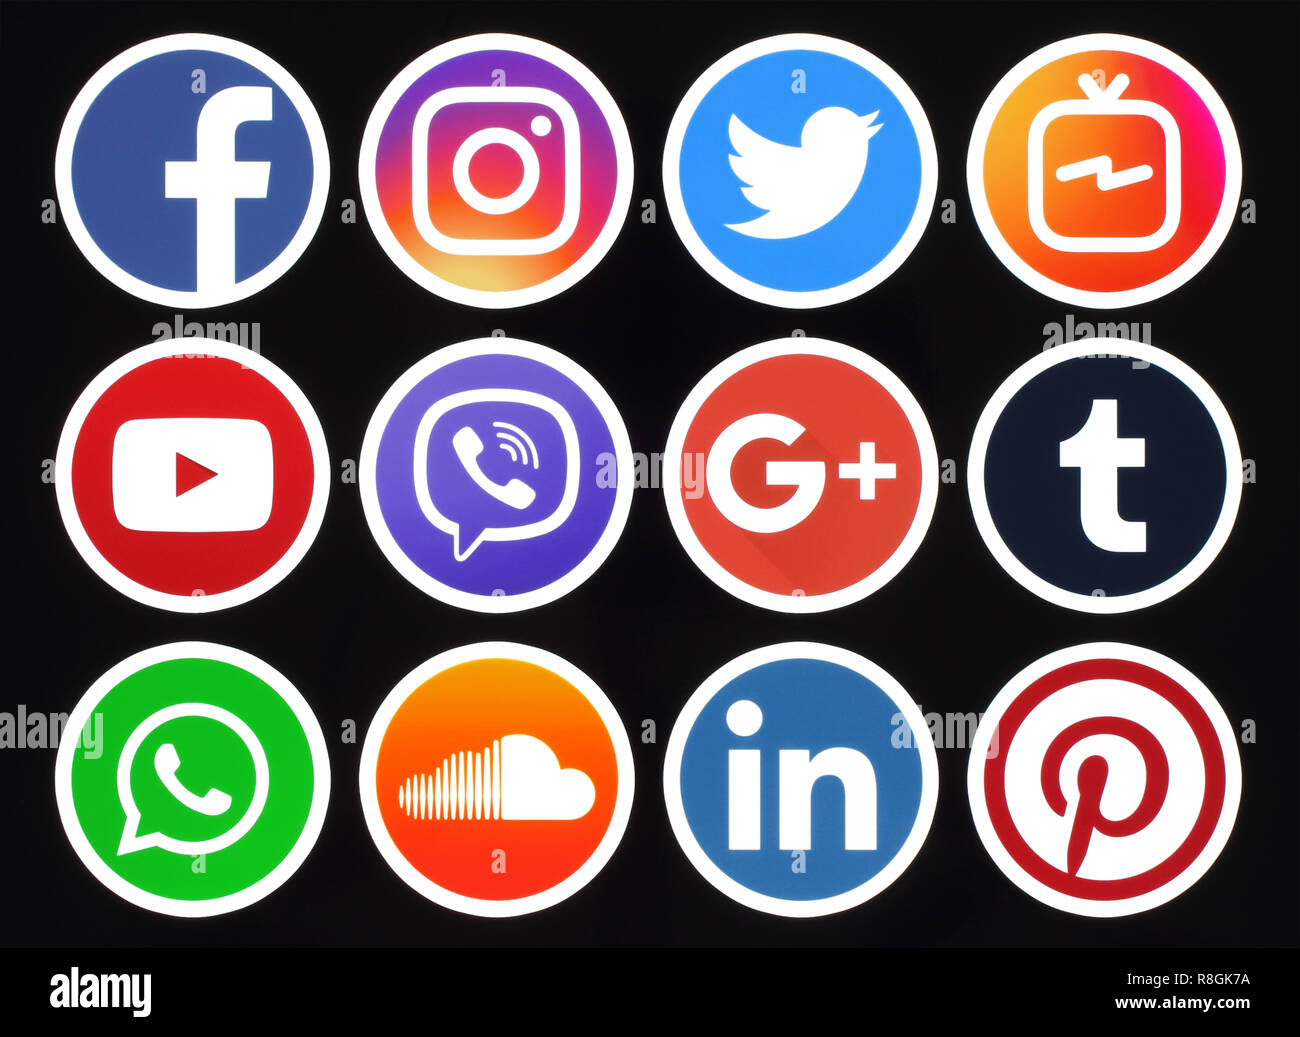 Kiev, Ukraine - 09 octobre, 2018 : cercle populaire social media icons avec listel blanc sur fond noir imprimé sur du papier : Facebook, Twitter, Instagram Banque D'Images